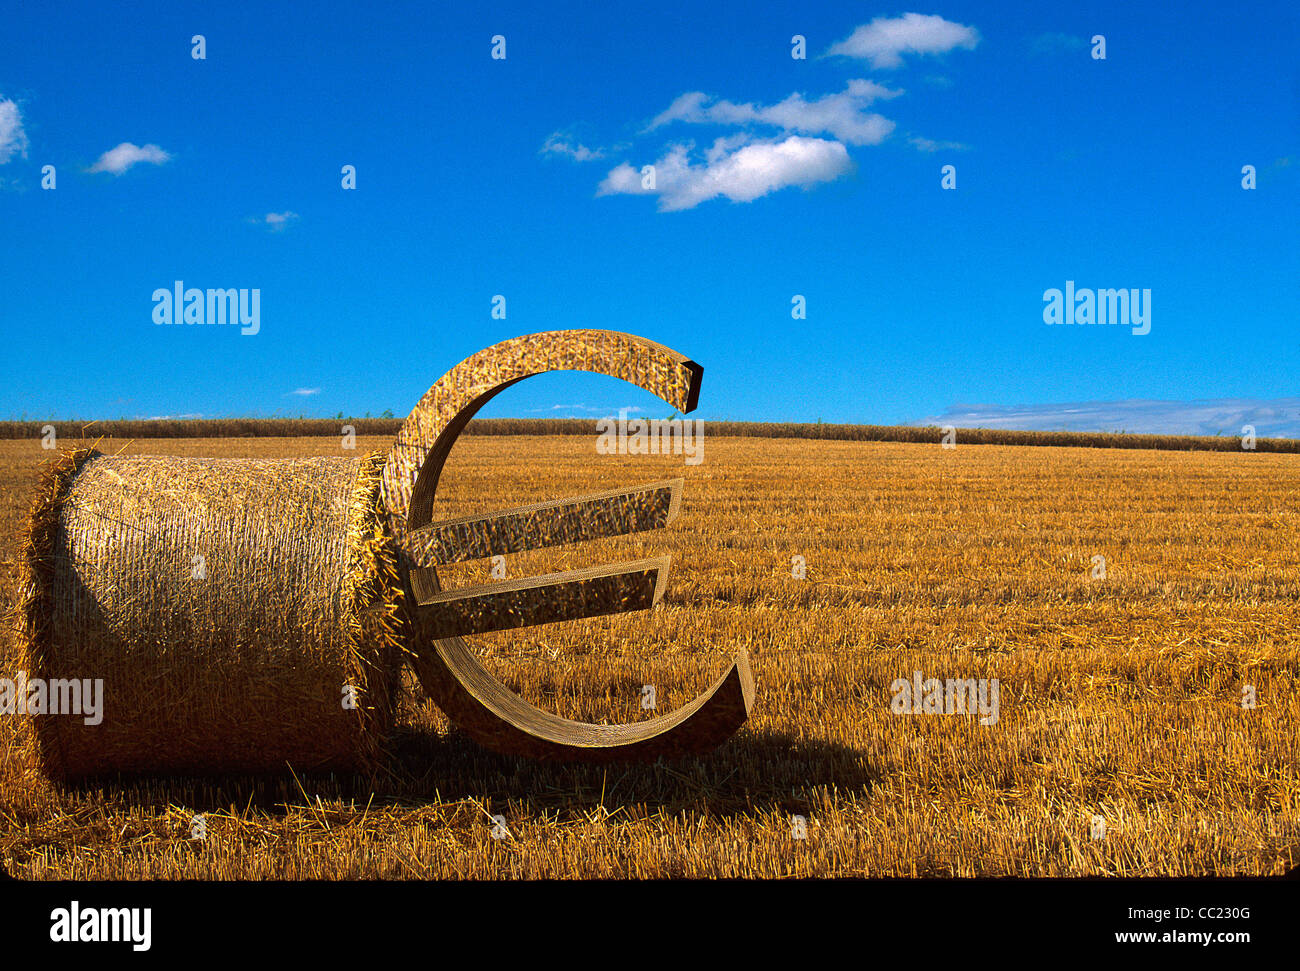 La agricultura y la agricultura concepto : el signo euro apoyado contra una paca de paja en un campo de trigo cosechado Foto de stock